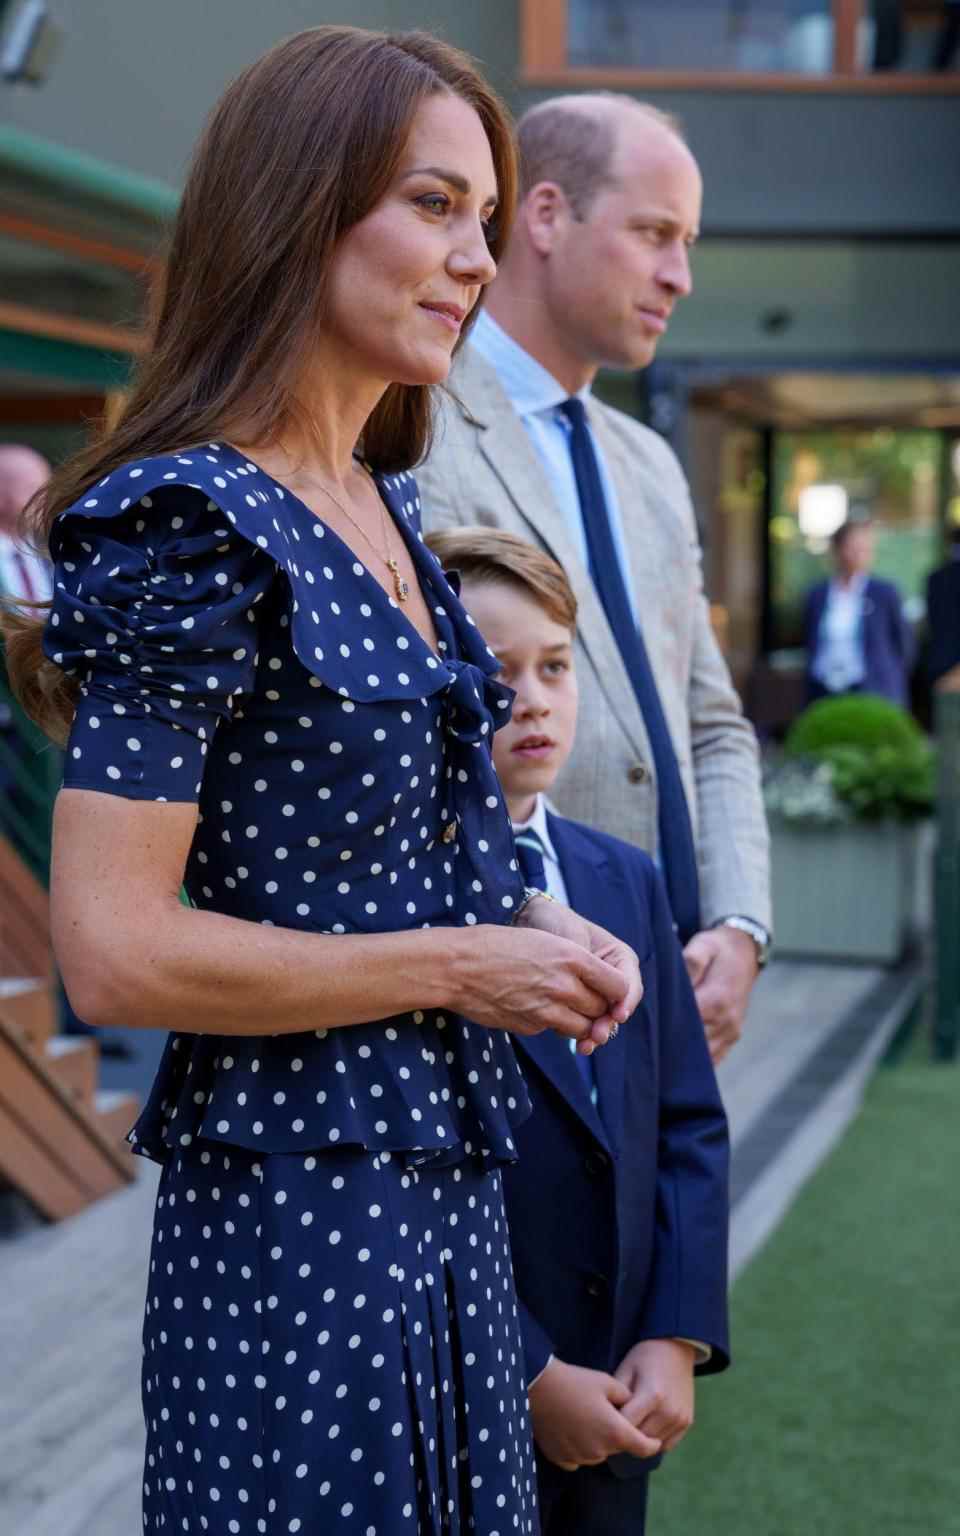 La duchesse de Cambridge à la finale du simple messieurs de Wimbledon, vêtue d'une jupe bleu marine et d'un haut assorti à pois blancs - Thomas Lovelock/AELTC/PA wire